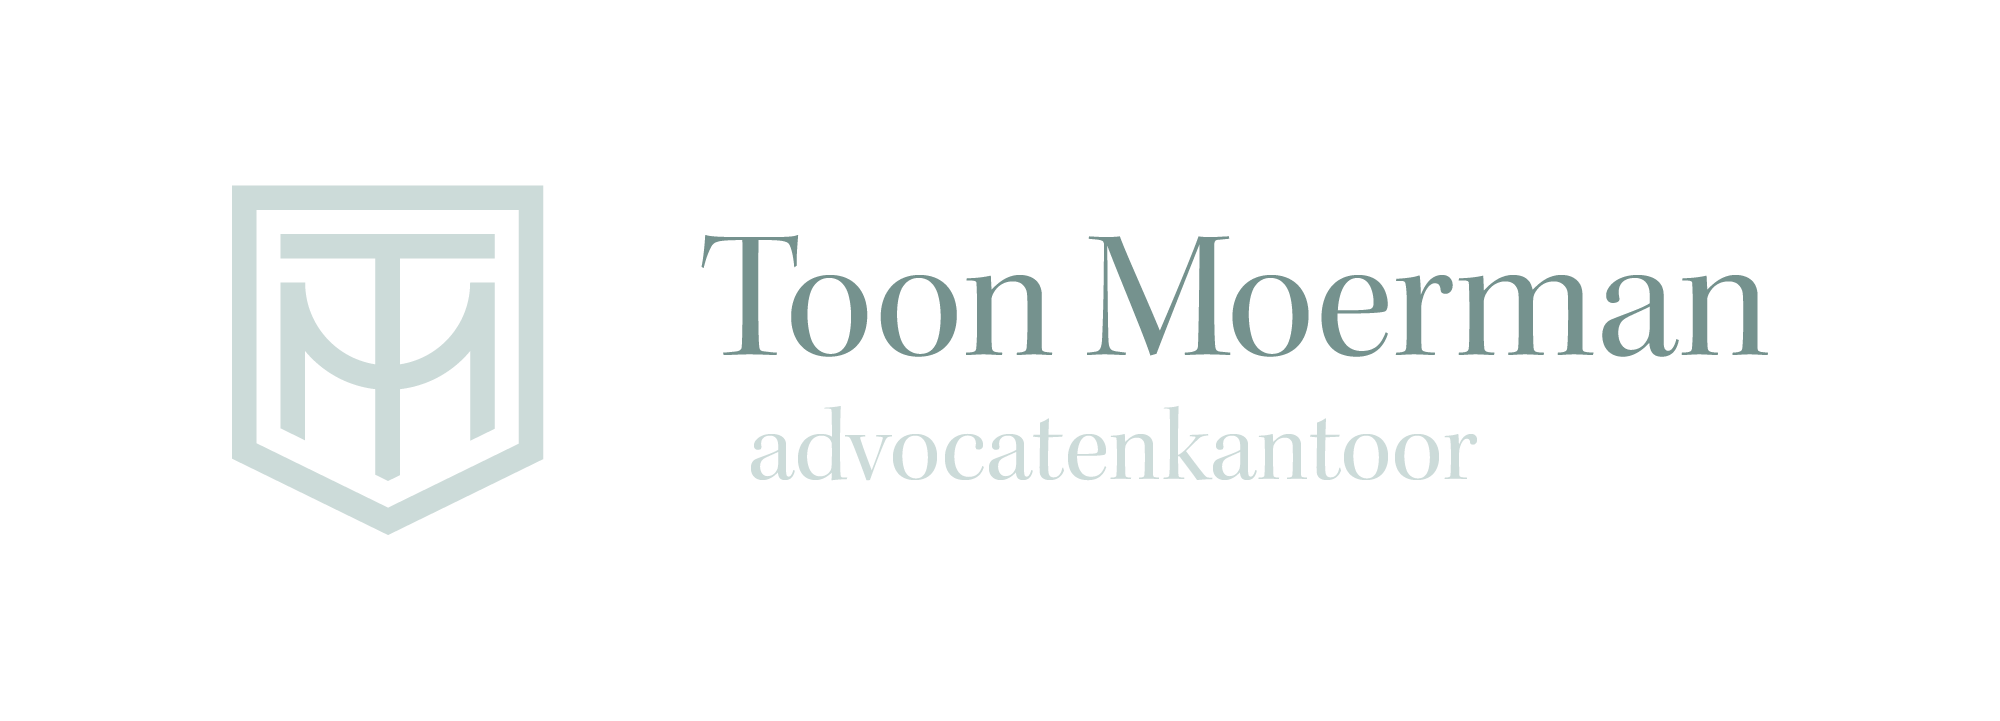 Advocatenkantoor Toon Moerman